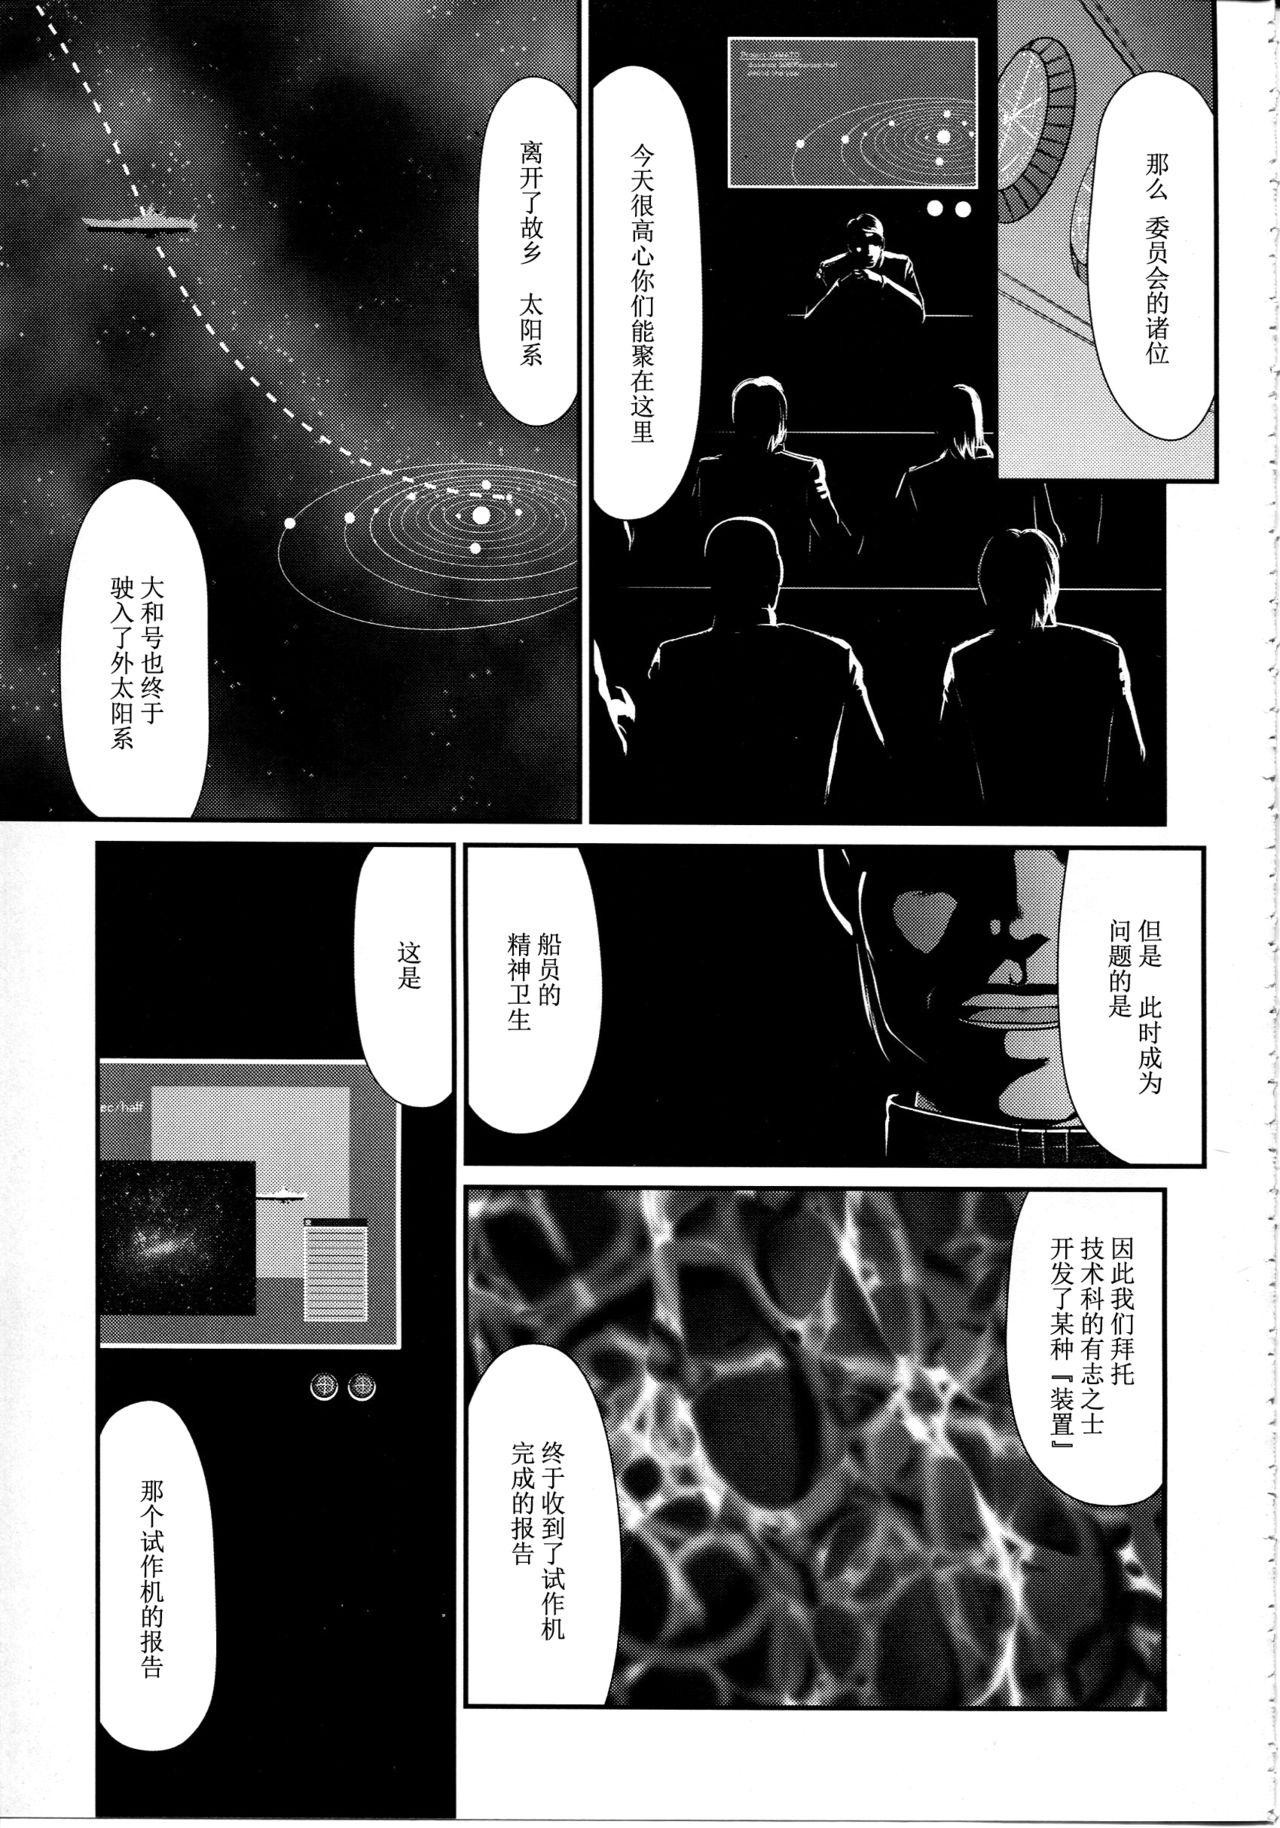 Nudes Yuki no Shizuku - Space battleship yamato 2199 Whore - Page 4